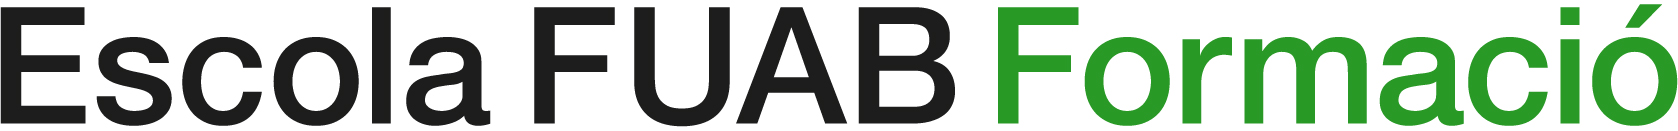 Logotip Escola FUAB Formació - 2 tintes - 1 línia